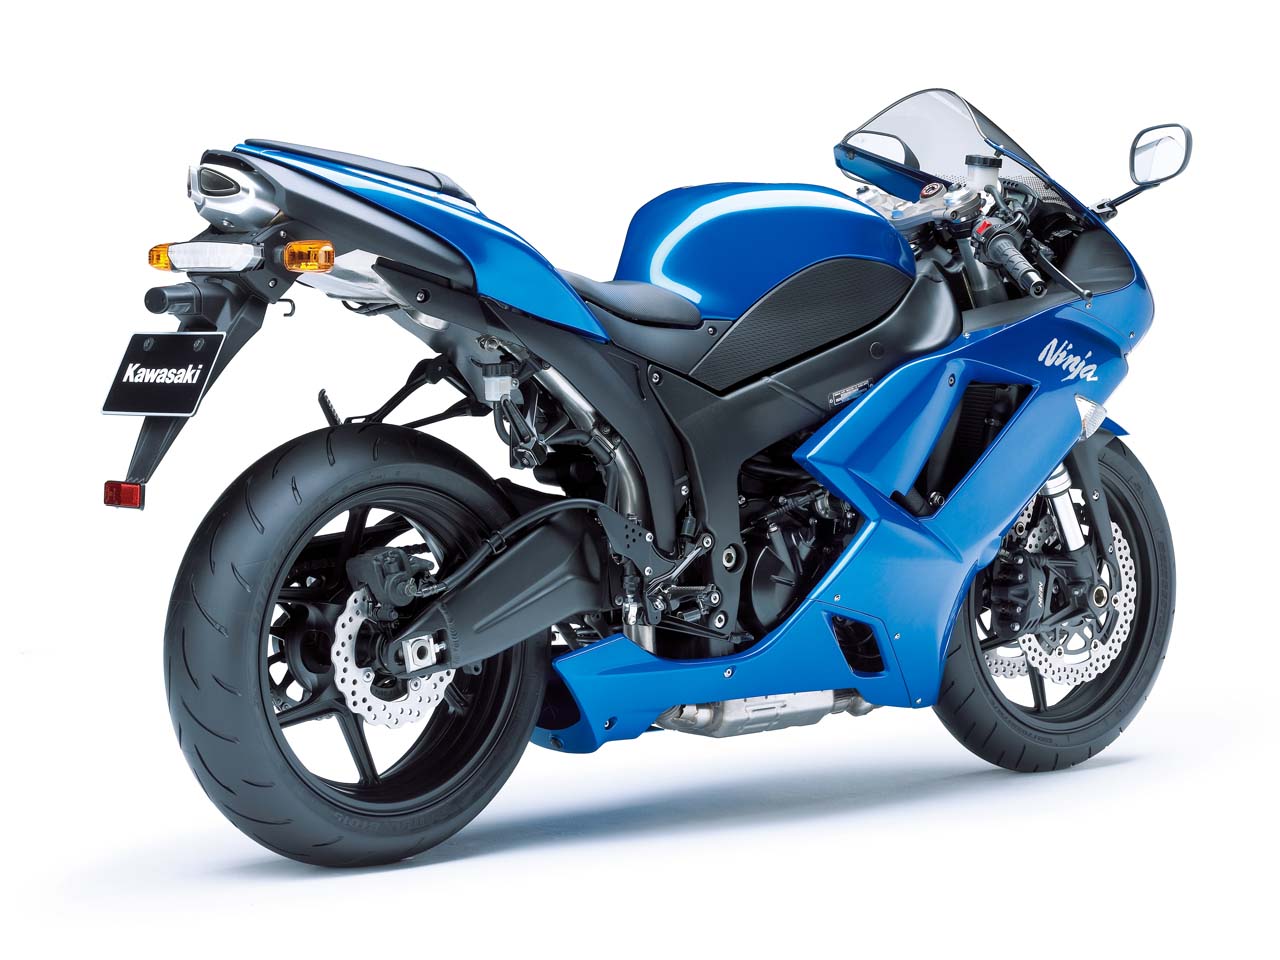 100 Gambar Motor Kawasaki Ninja Zx 6r Terbaru Dan Terlengkap